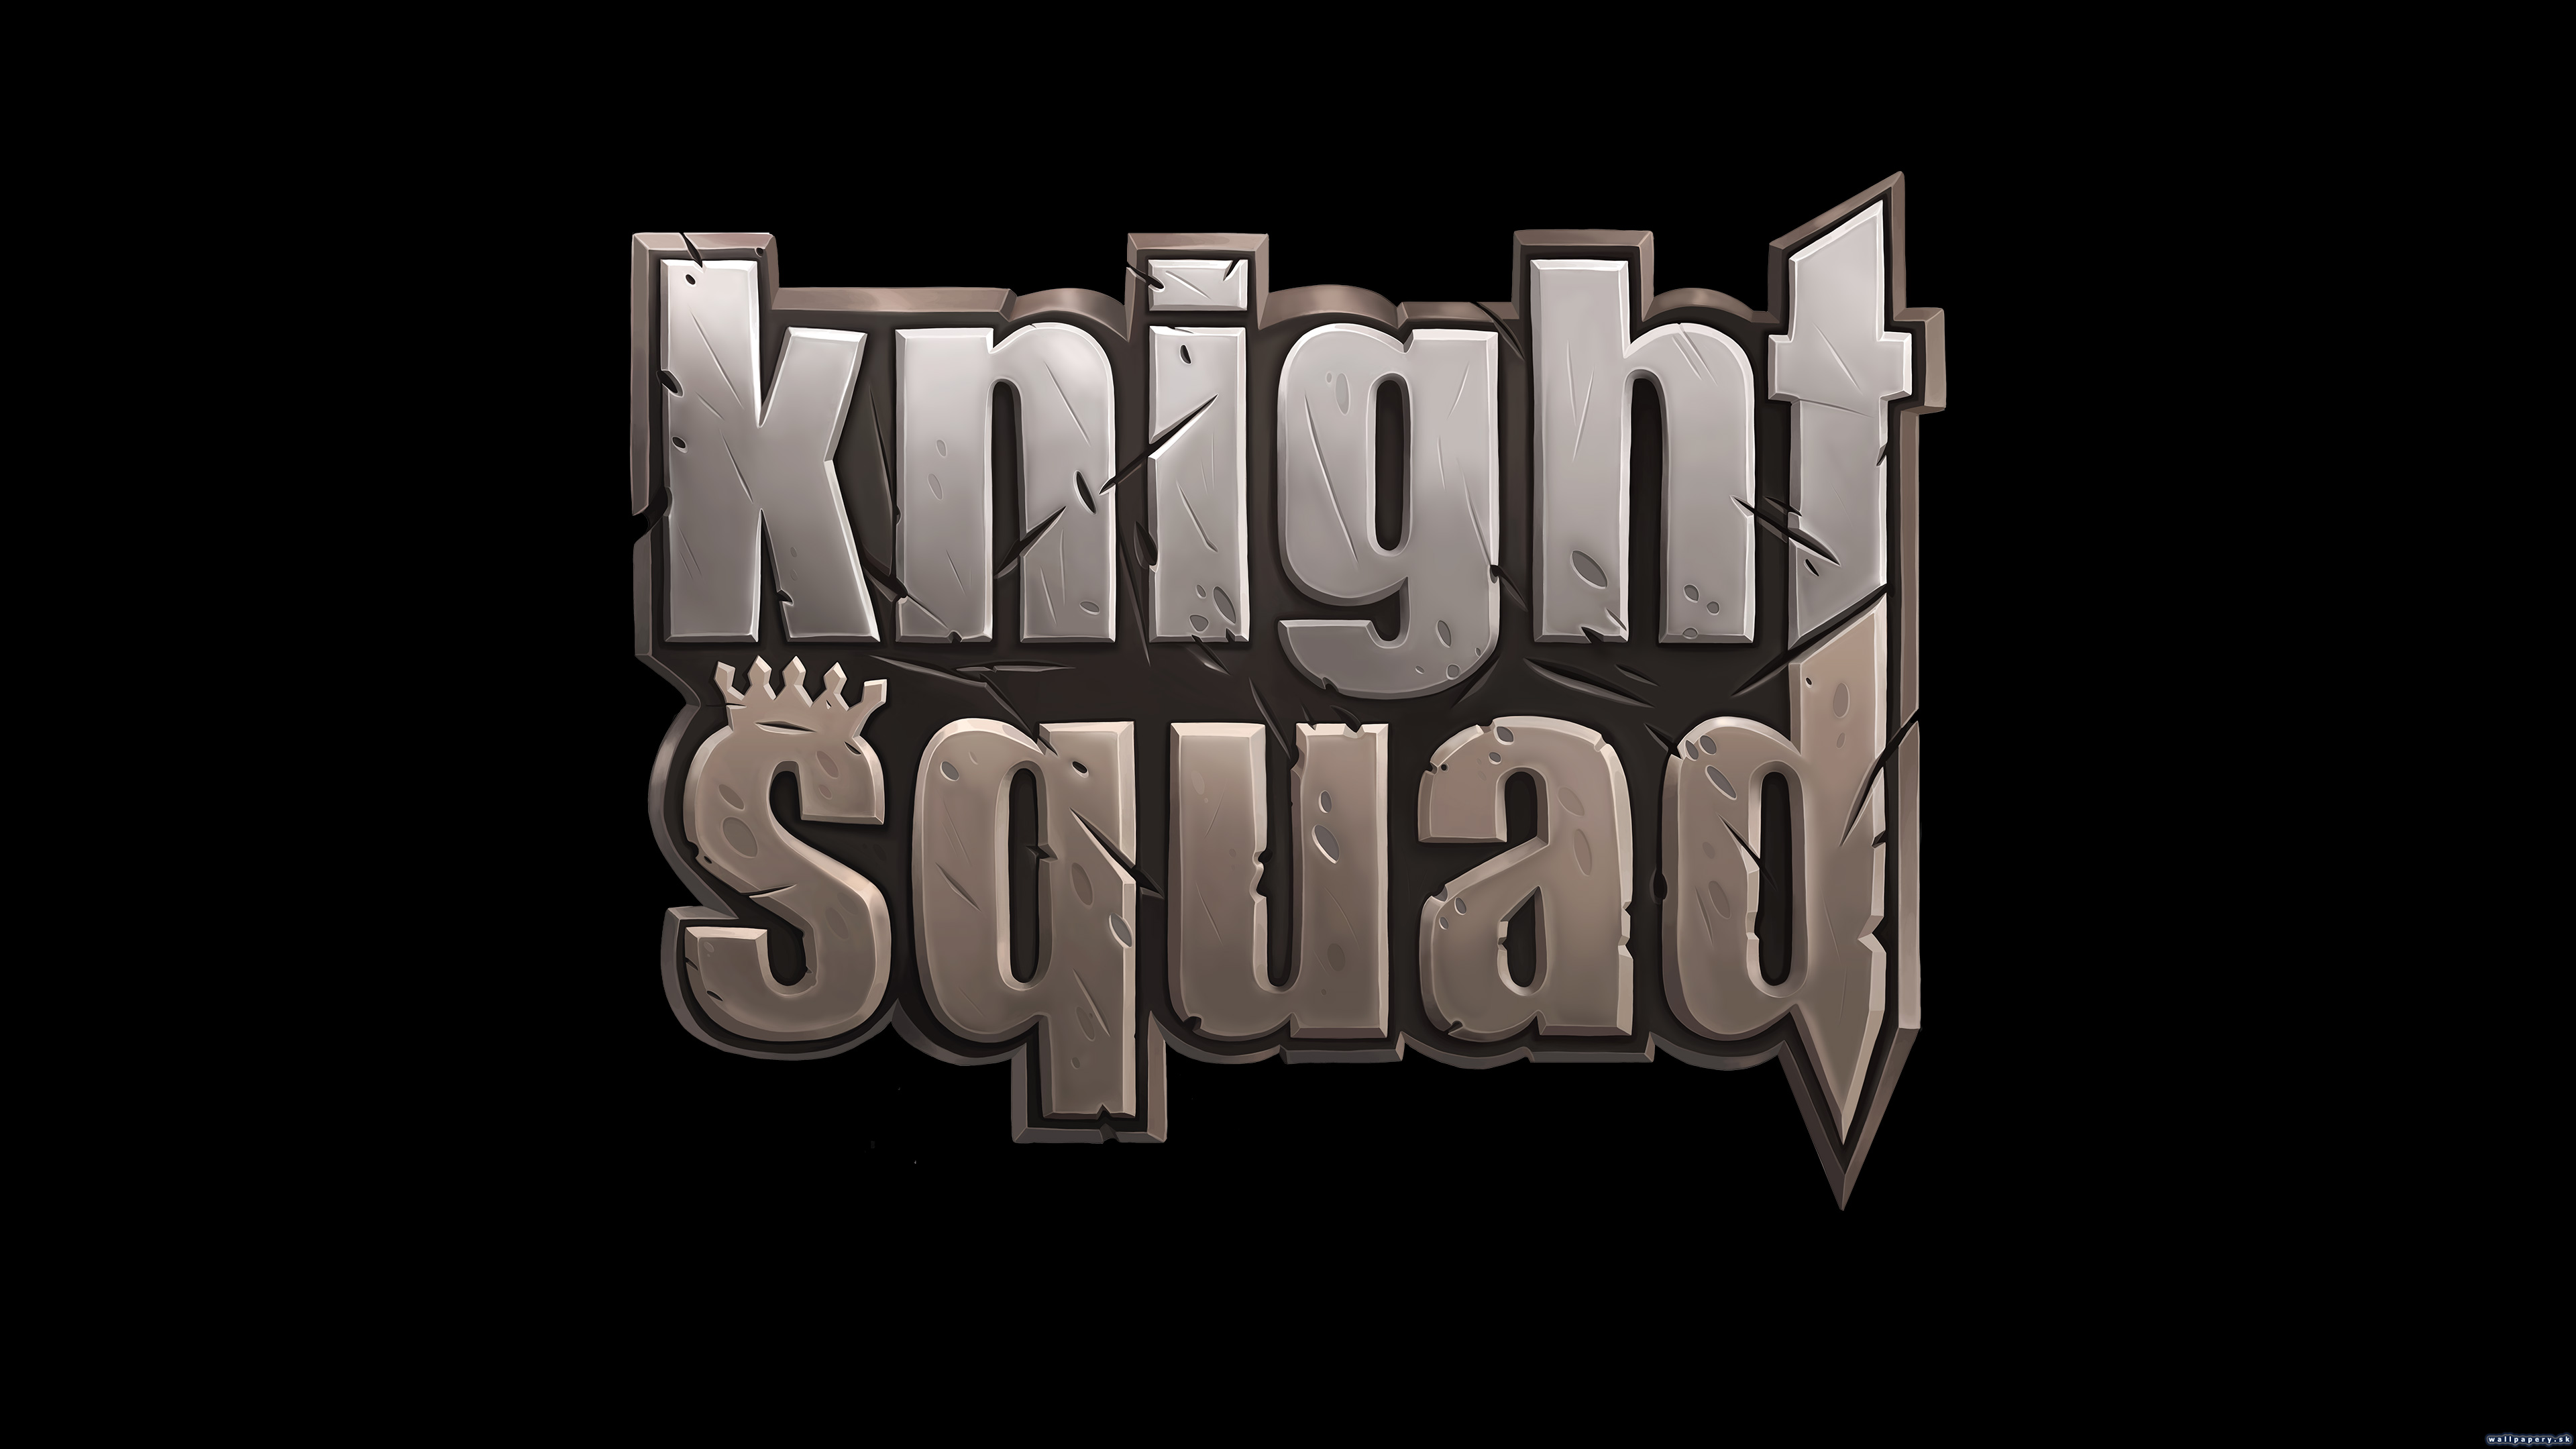 Knight Squad - wallpaper 2